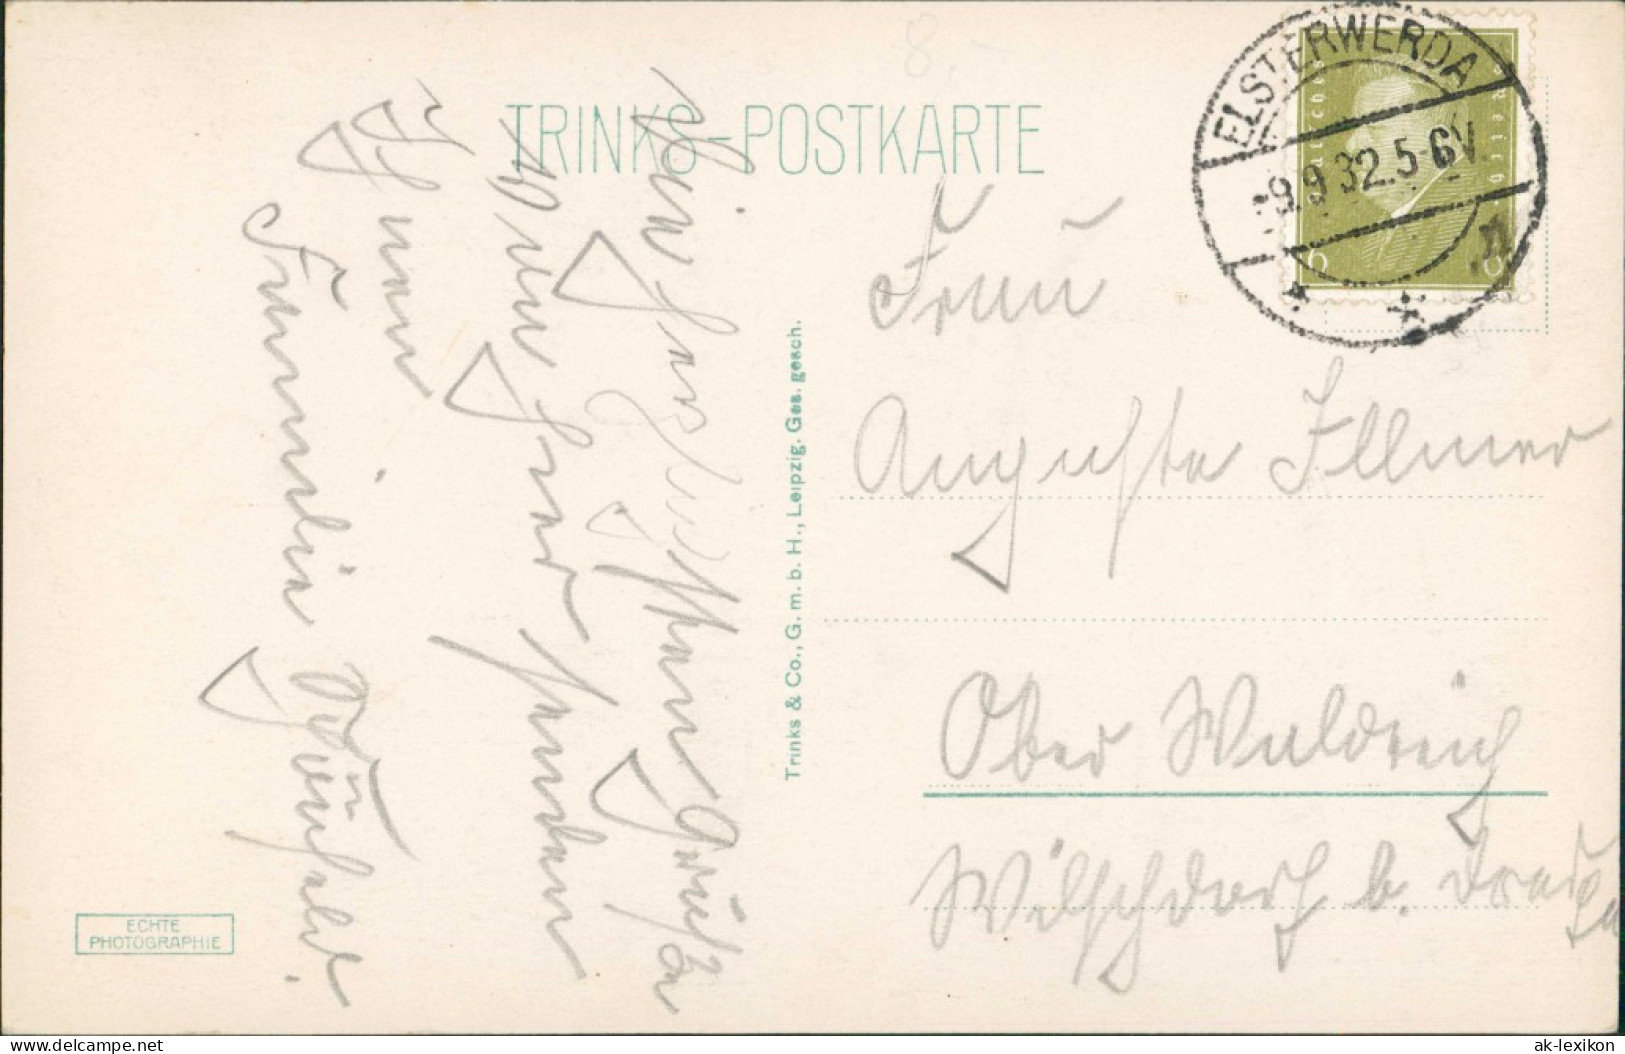 Ansichtskarte Elsterwerda Wikow Elsterstraße Und Postamt 1932 - Elsterwerda